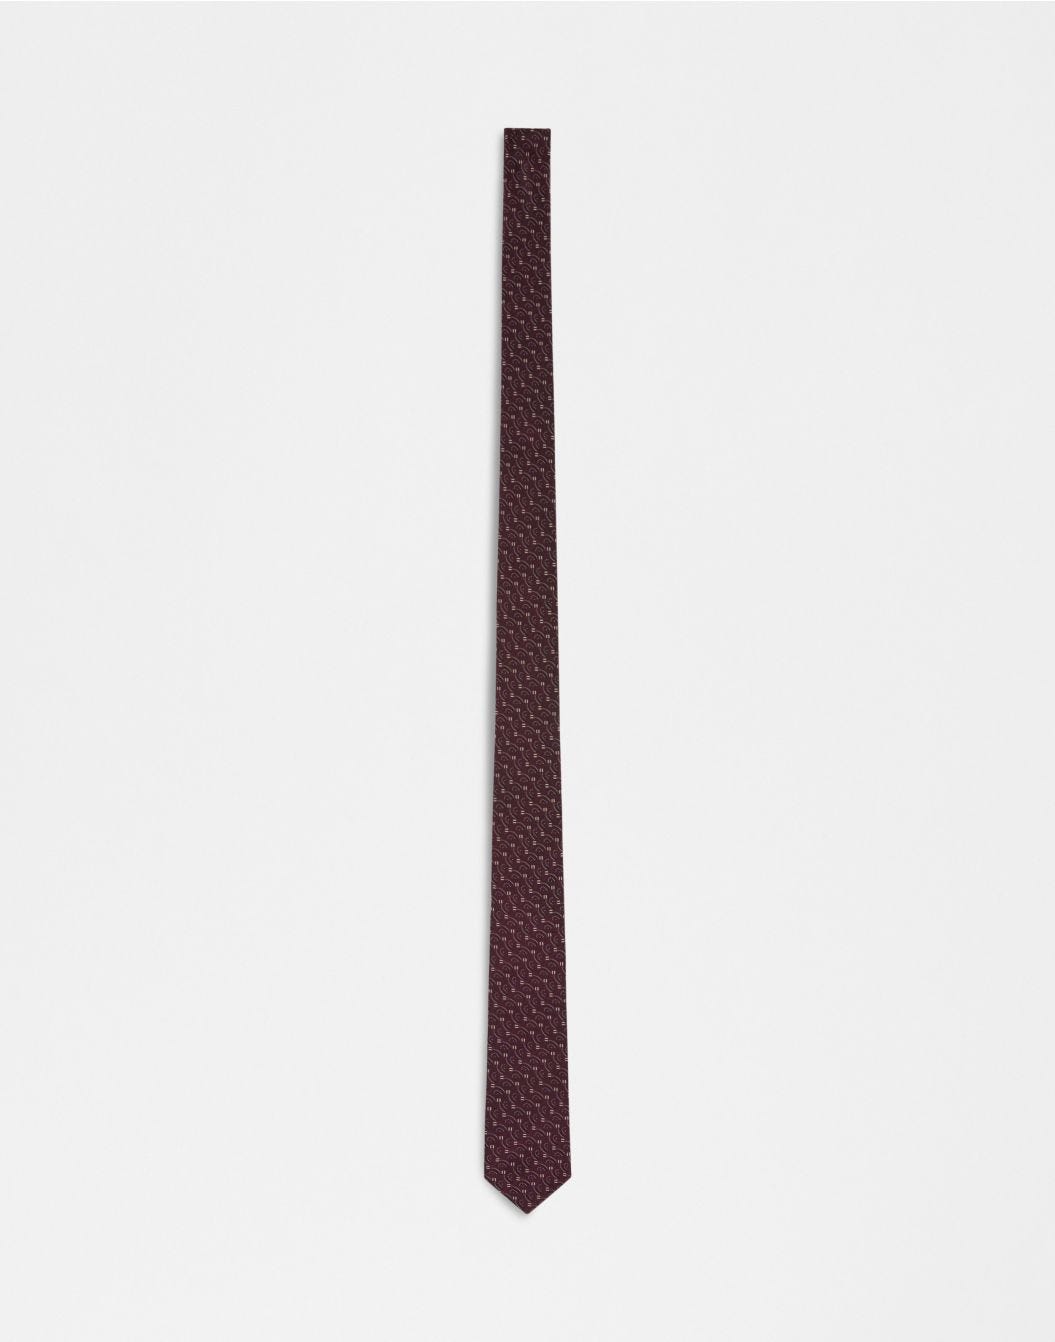 Cravatta in seta con stampa bordeaux, beige e nero